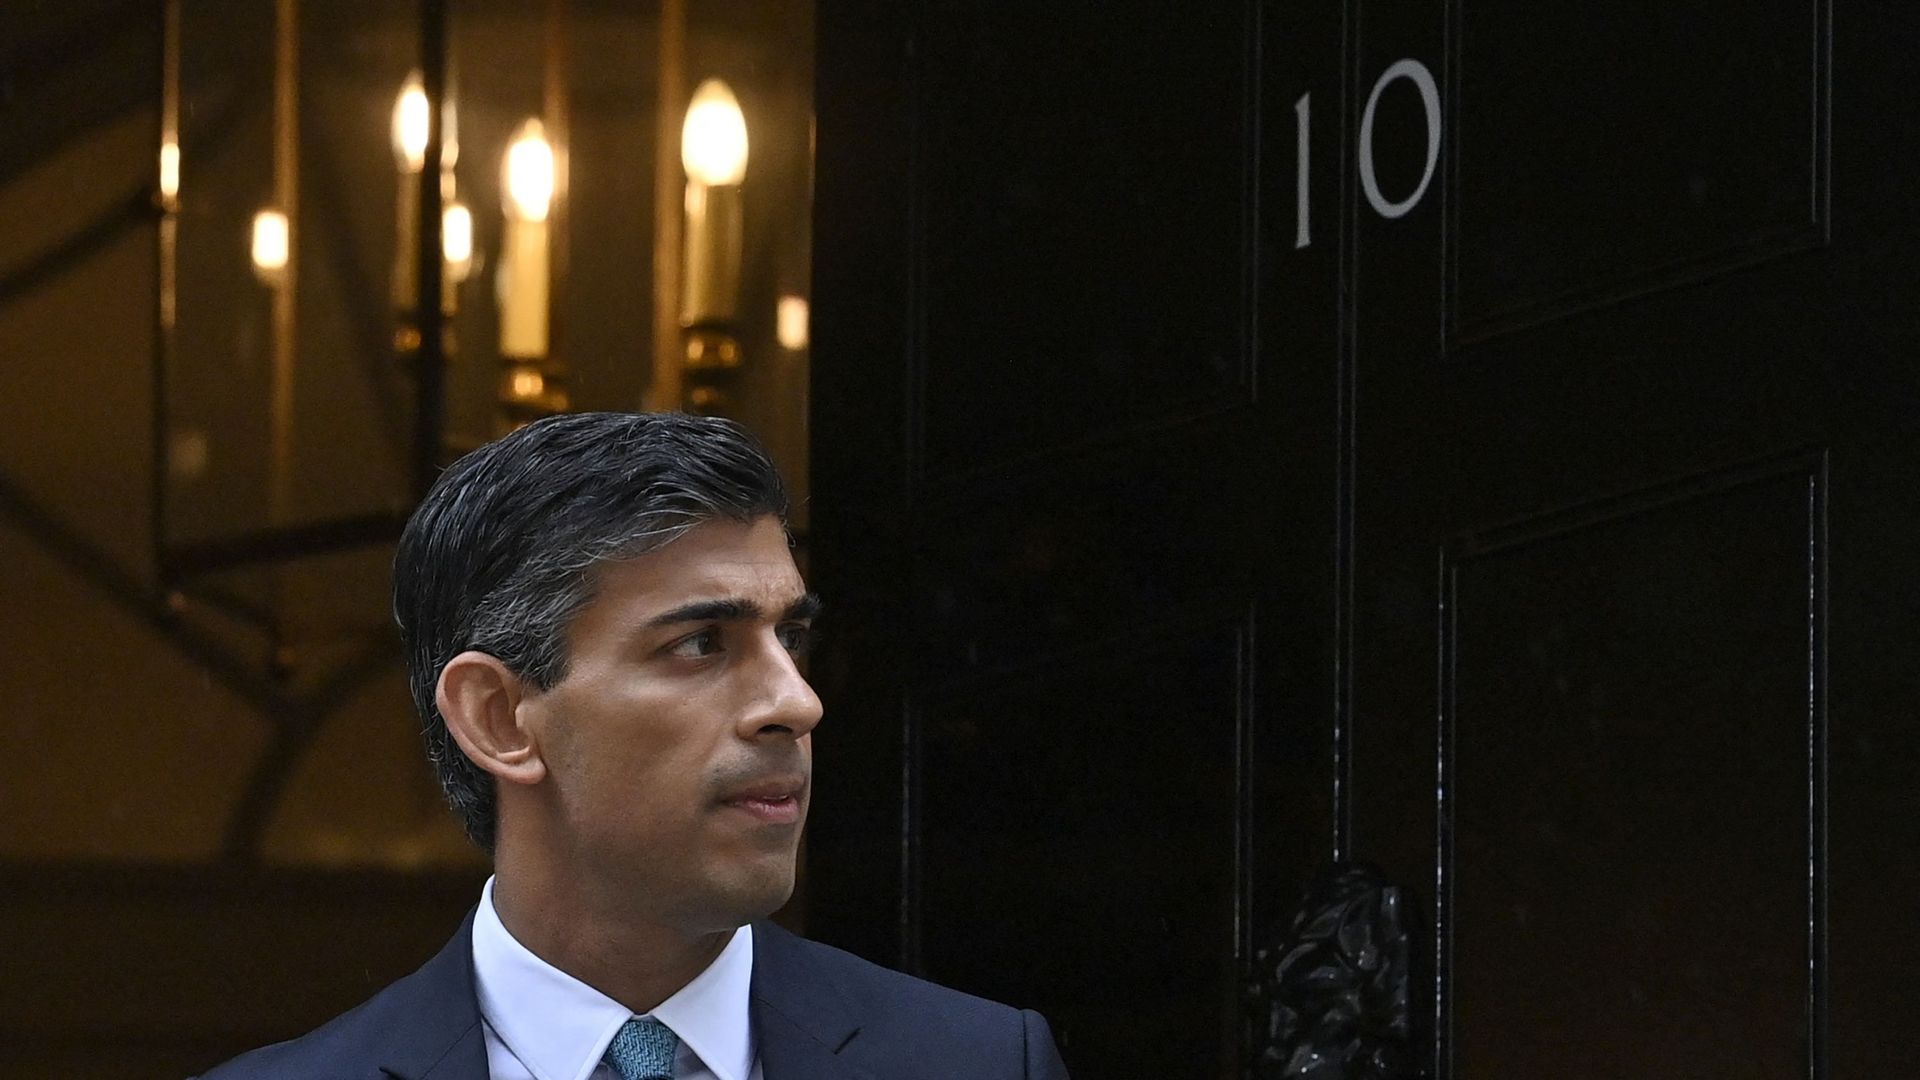 Le Premier ministre britannique, Rishi Sunak, quitte le 10 Downing Street, dans le centre de Londres, le 26 octobre 2022.